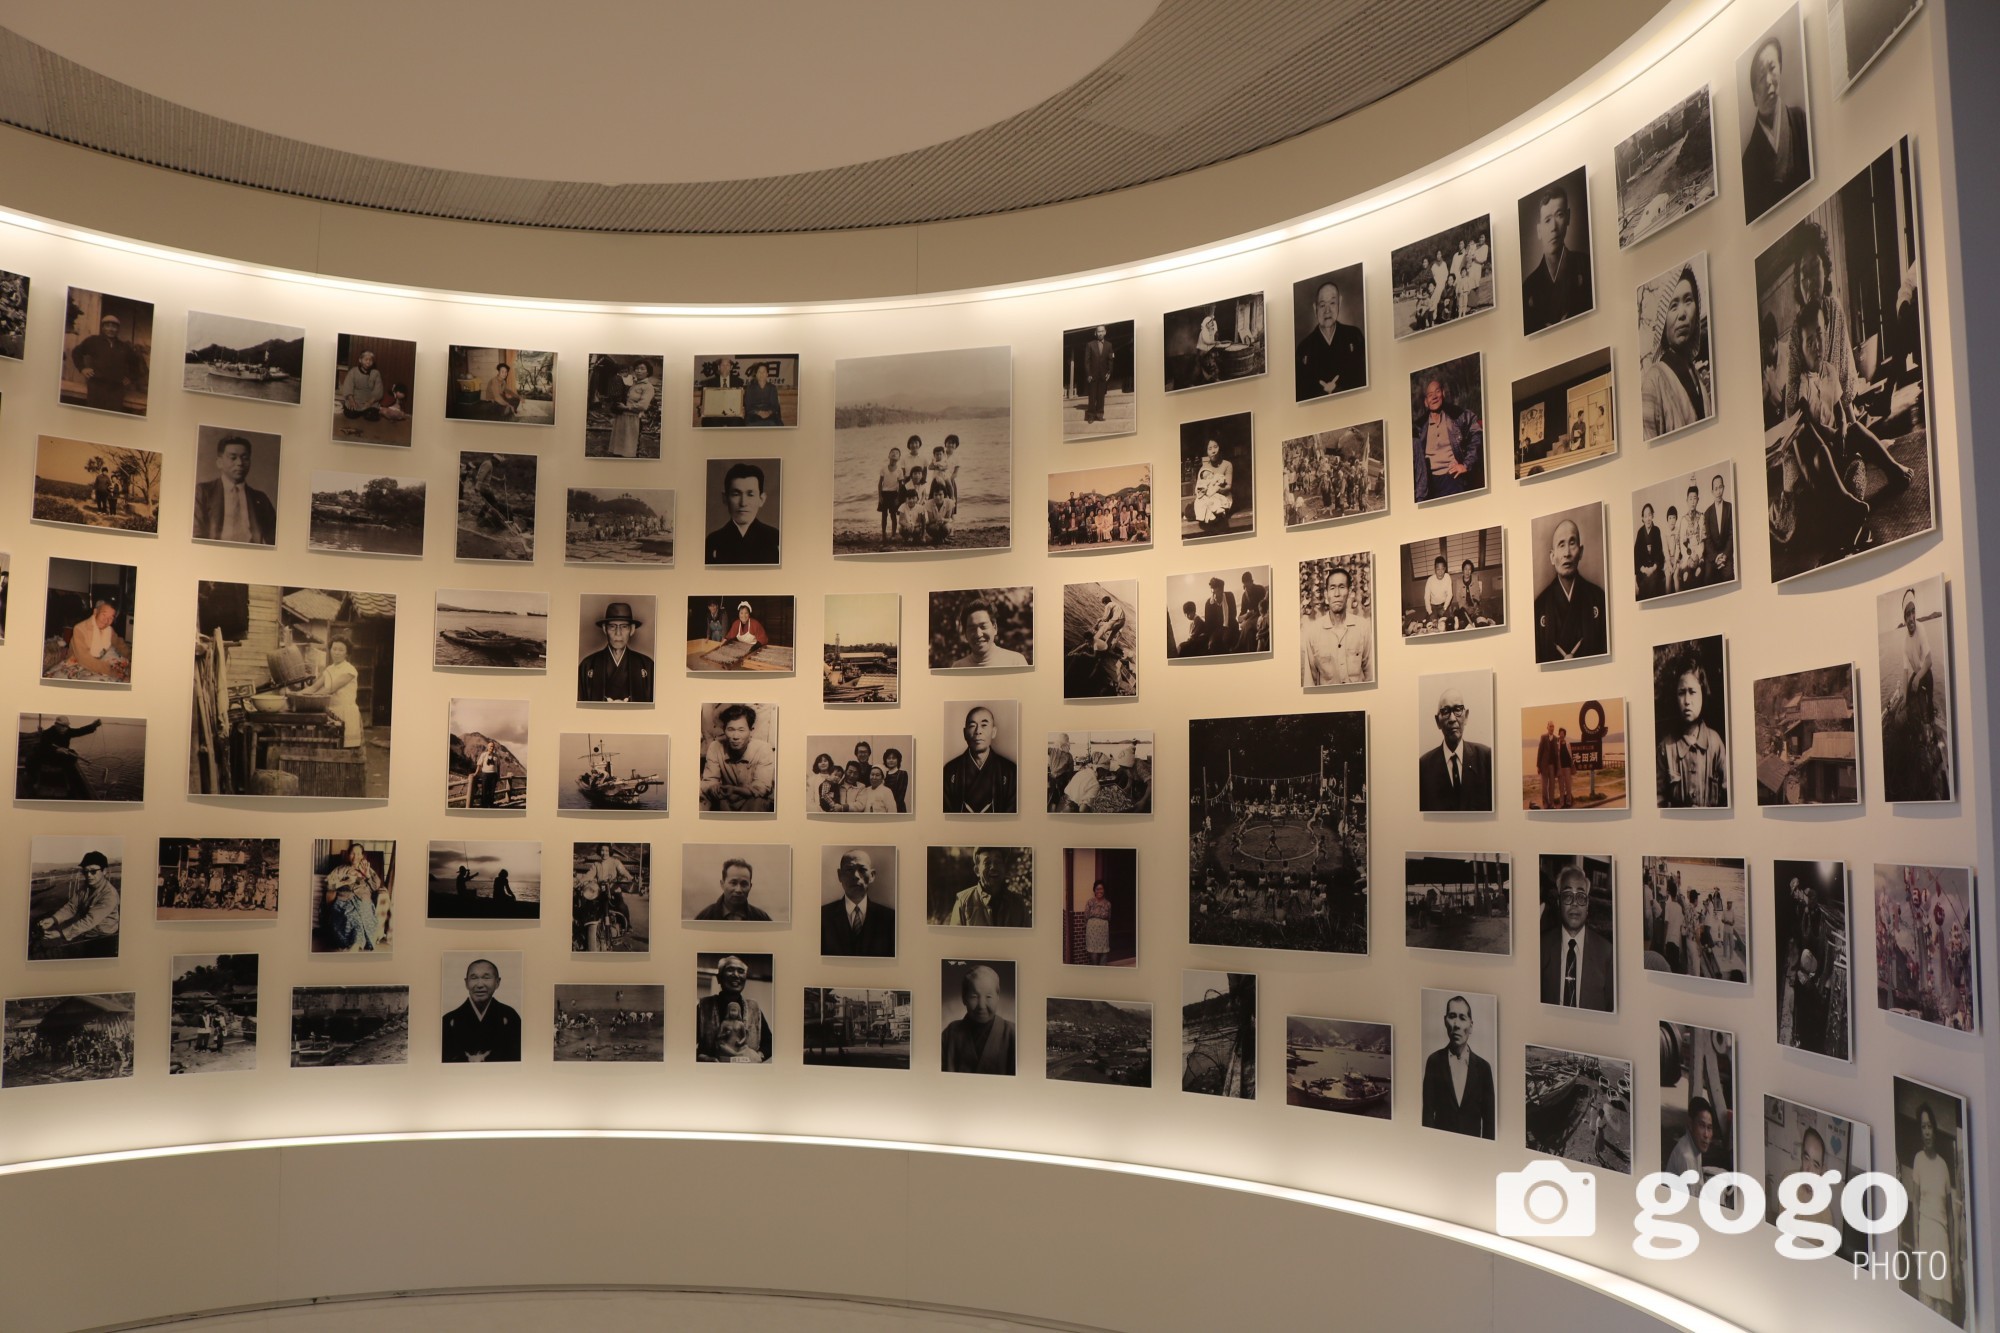 Минамата өвчний эх сурвалжийн музей- Минамата өвчтэй хүмүүс болон тэдний гэр бүлийн зураг. Хүн болгон өөр түүхтэй.